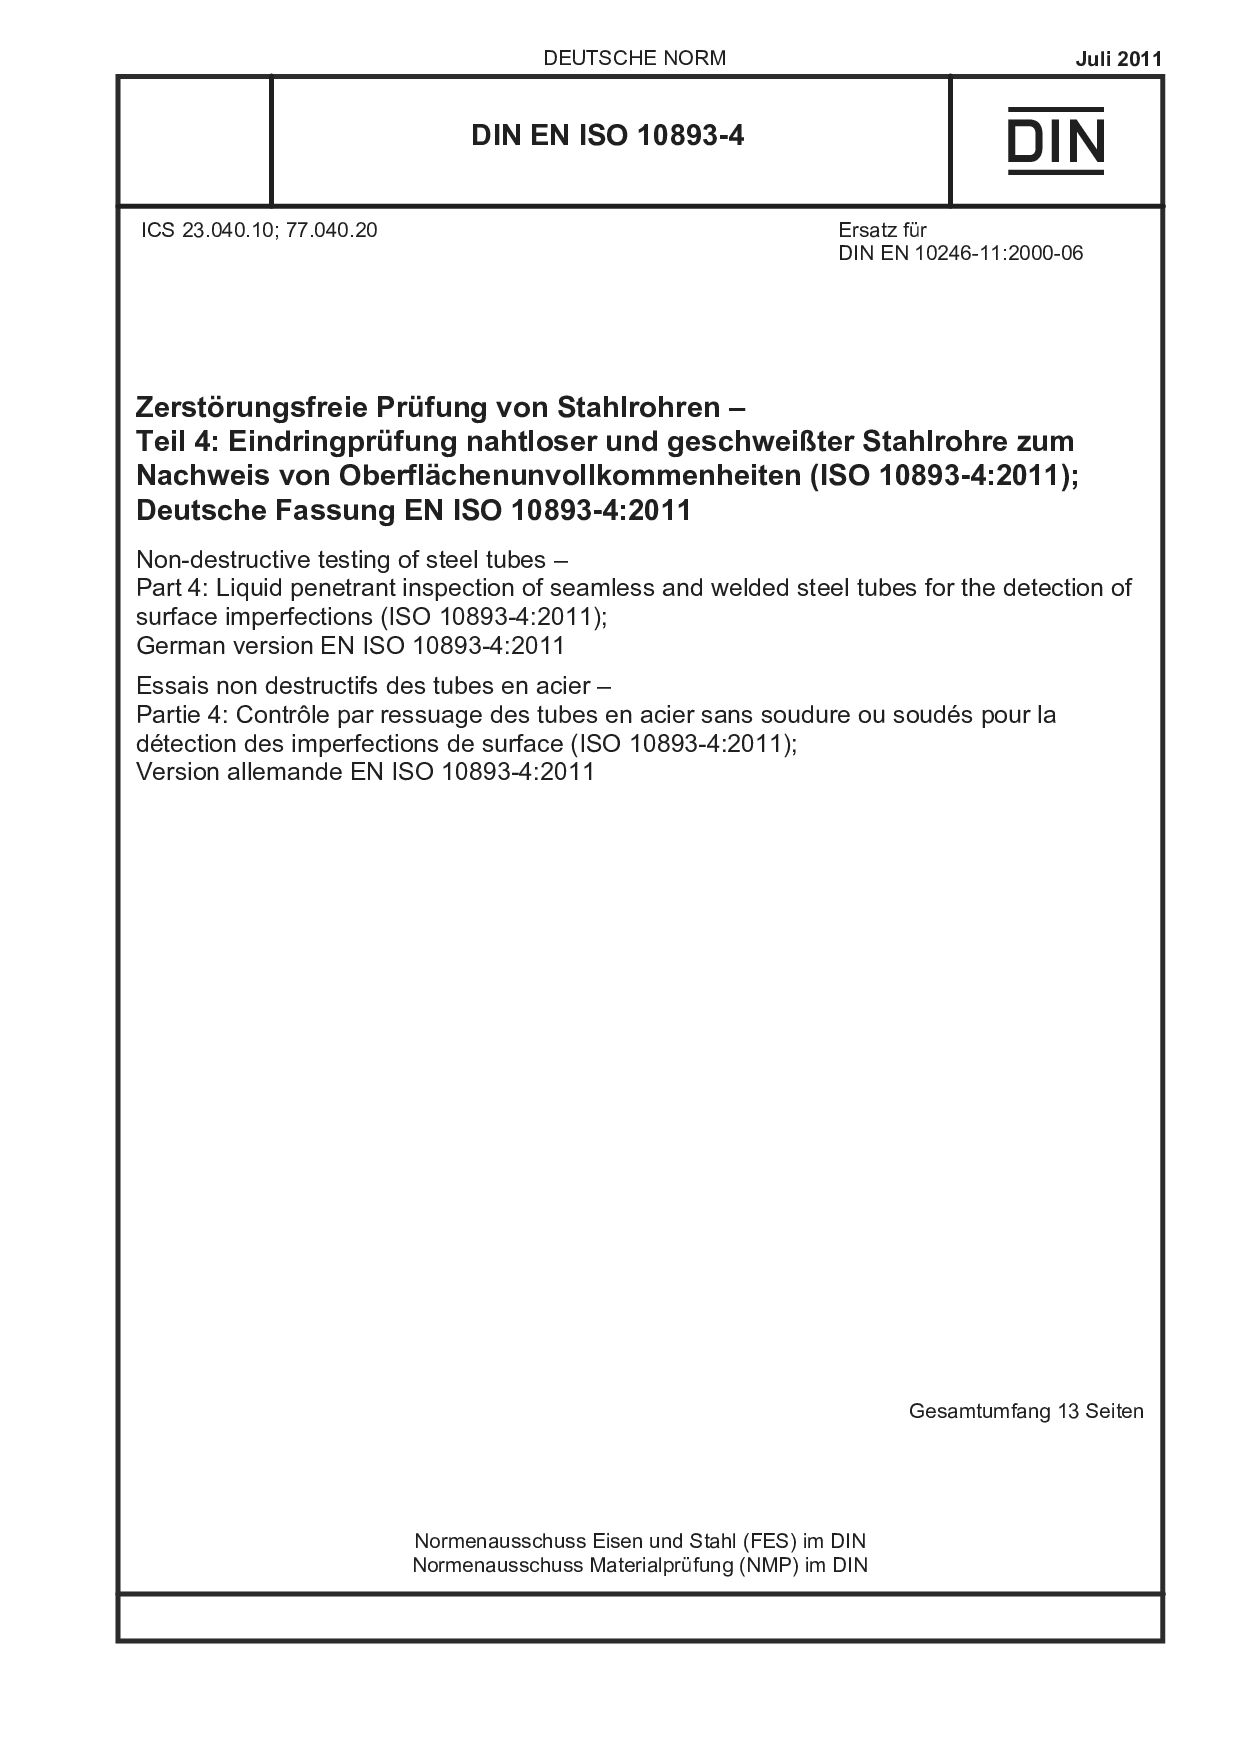 DIN EN ISO 10893-4:2011封面图